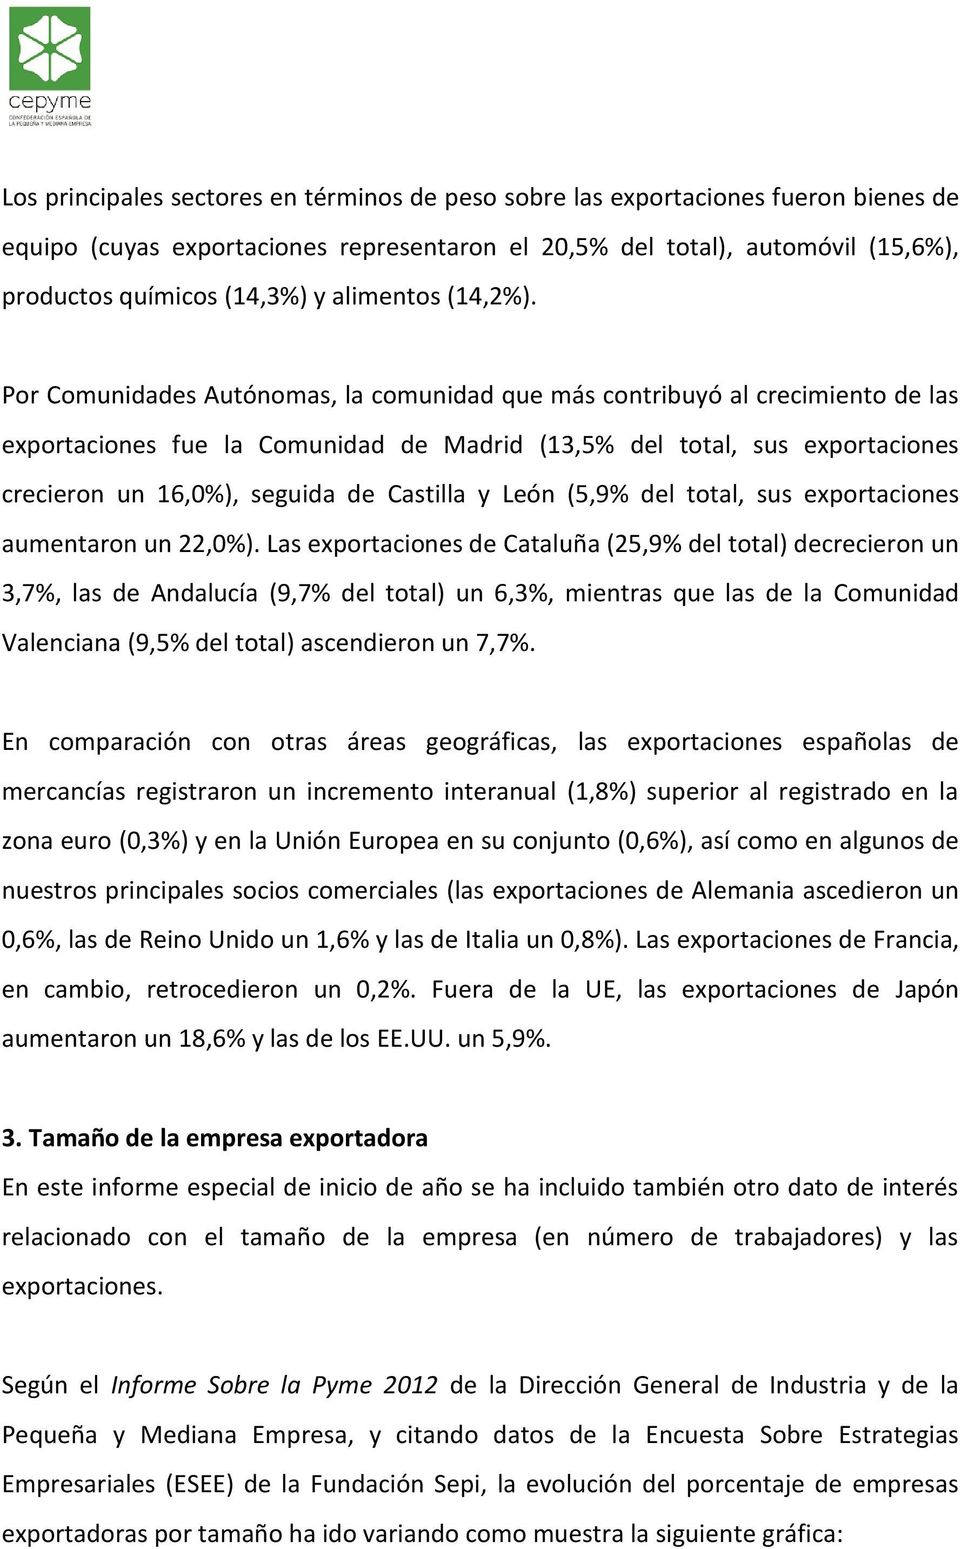 Por Comunidades Autónomas, la comunidad que más contribuyó al crecimiento de las exportaciones fue la Comunidad de Madrid (13,5% del total, sus exportaciones crecieron un 16,0%), seguida de Castilla